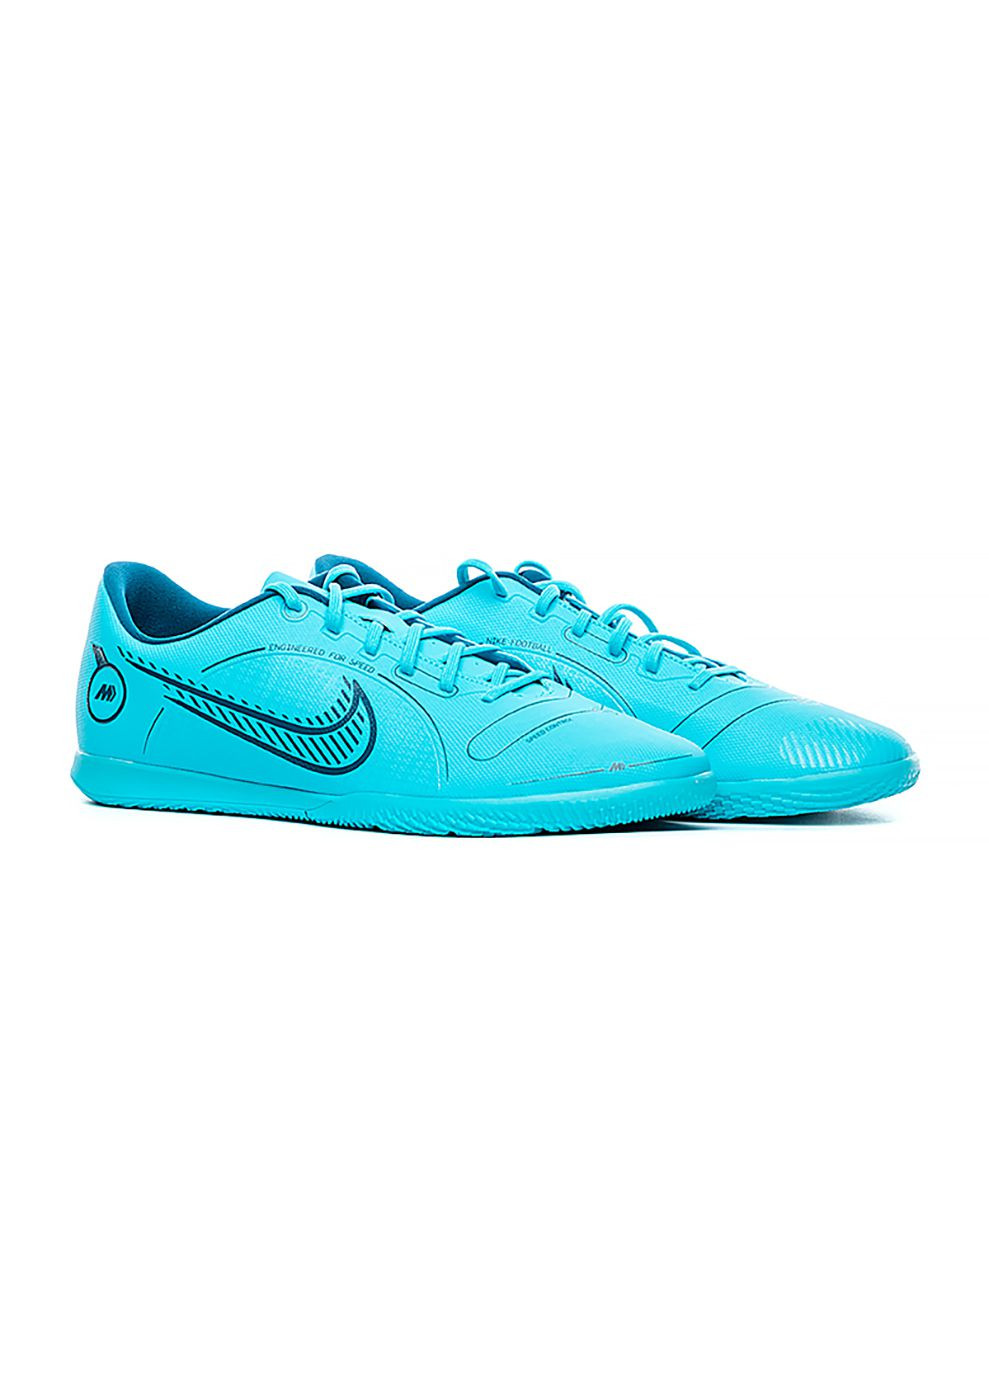 Чоловічі Футзалки VAPOR 14 CLUB IC Блакитний Nike (268747490)